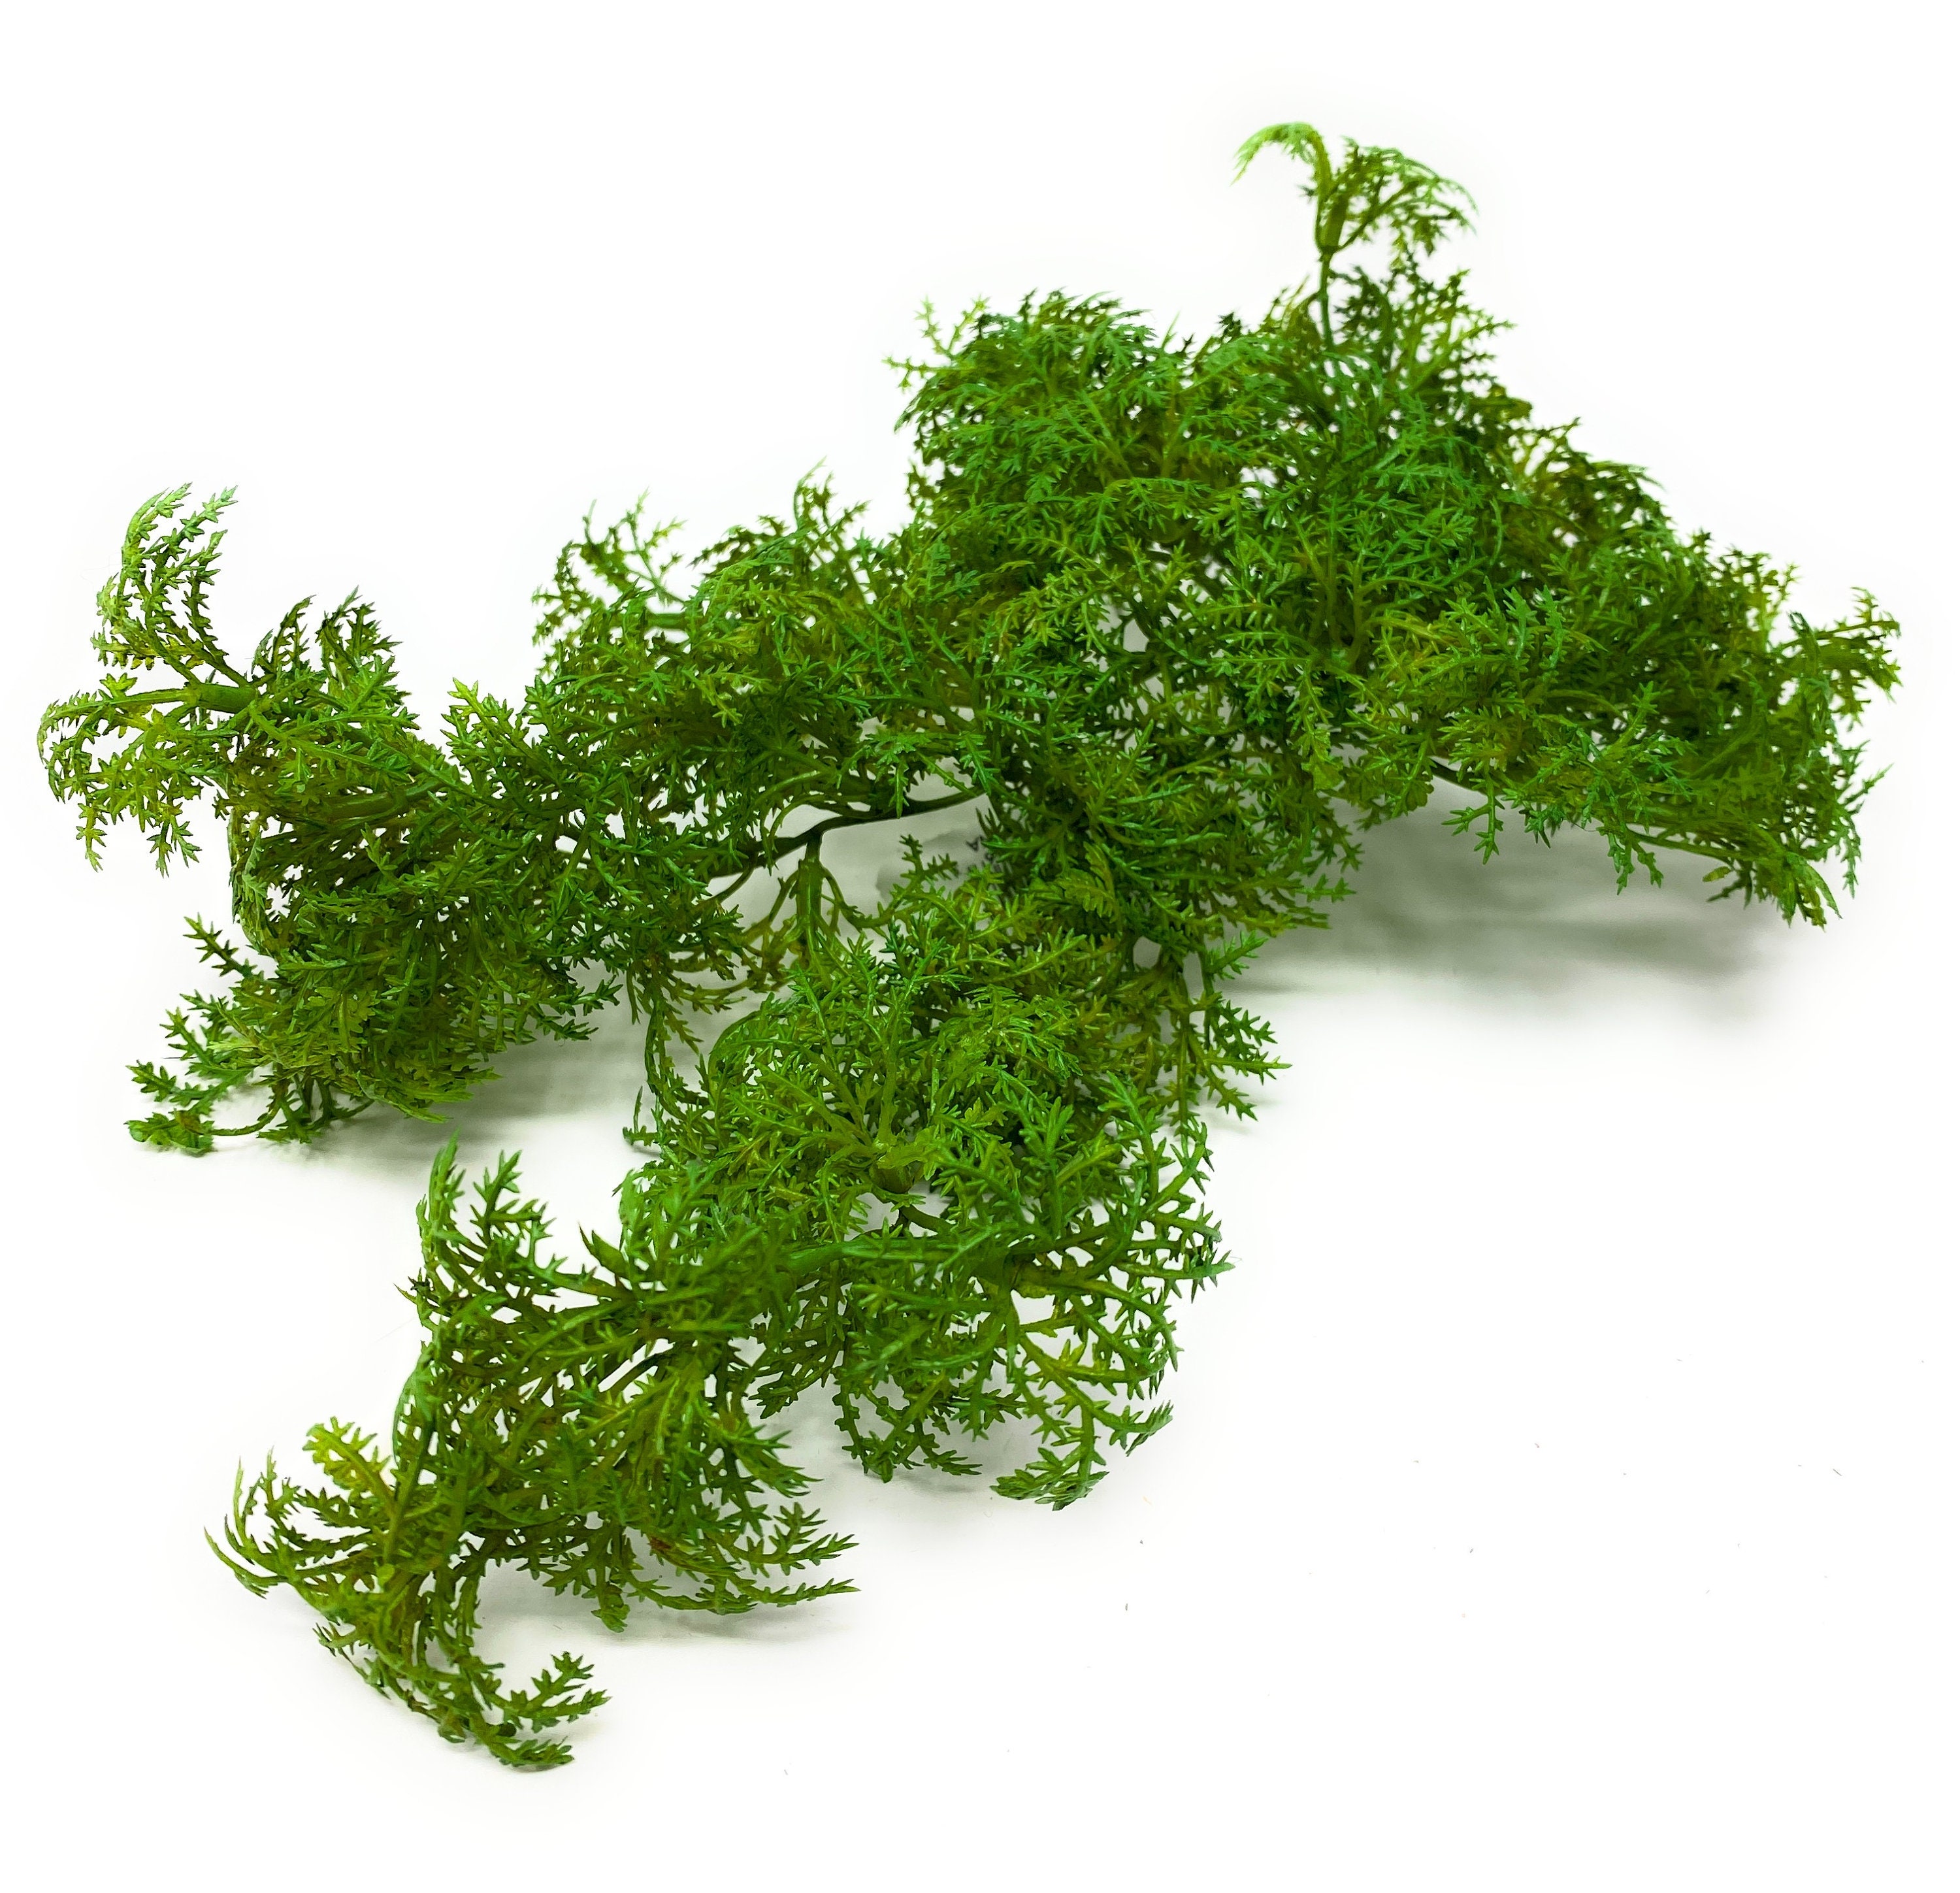 1 pack green moss for planters artificial moss lichen forest moss lichen  lifelike simulatioan lichen craft moss artificial